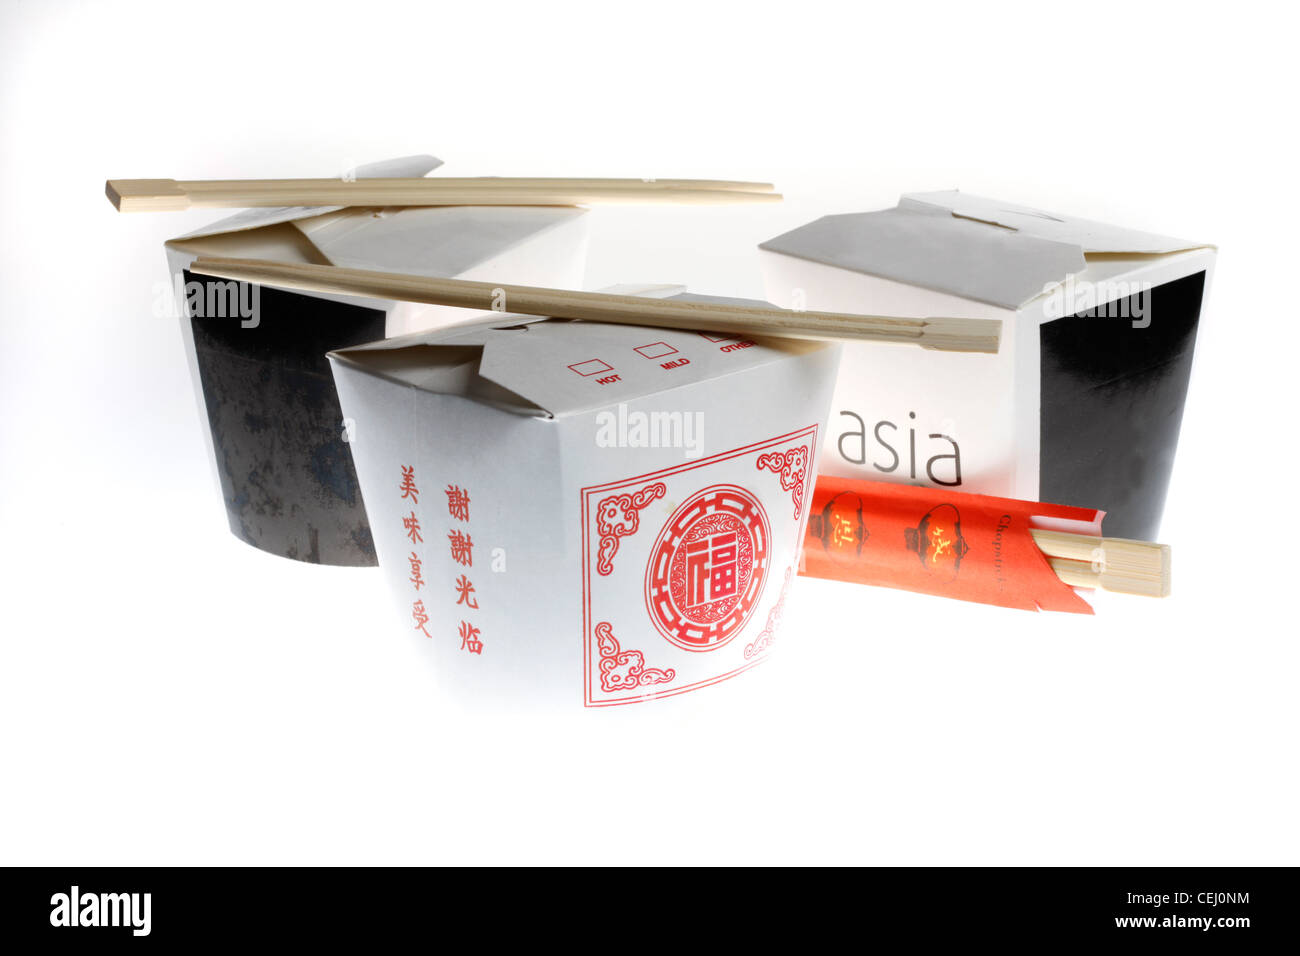 Ernährung, Fast-Food. Asiatische Küche, zum mitnehmen. Nudel- und Reisgerichte Gerichte in einer Pappschachtel mit Stäbchen. Stockfoto